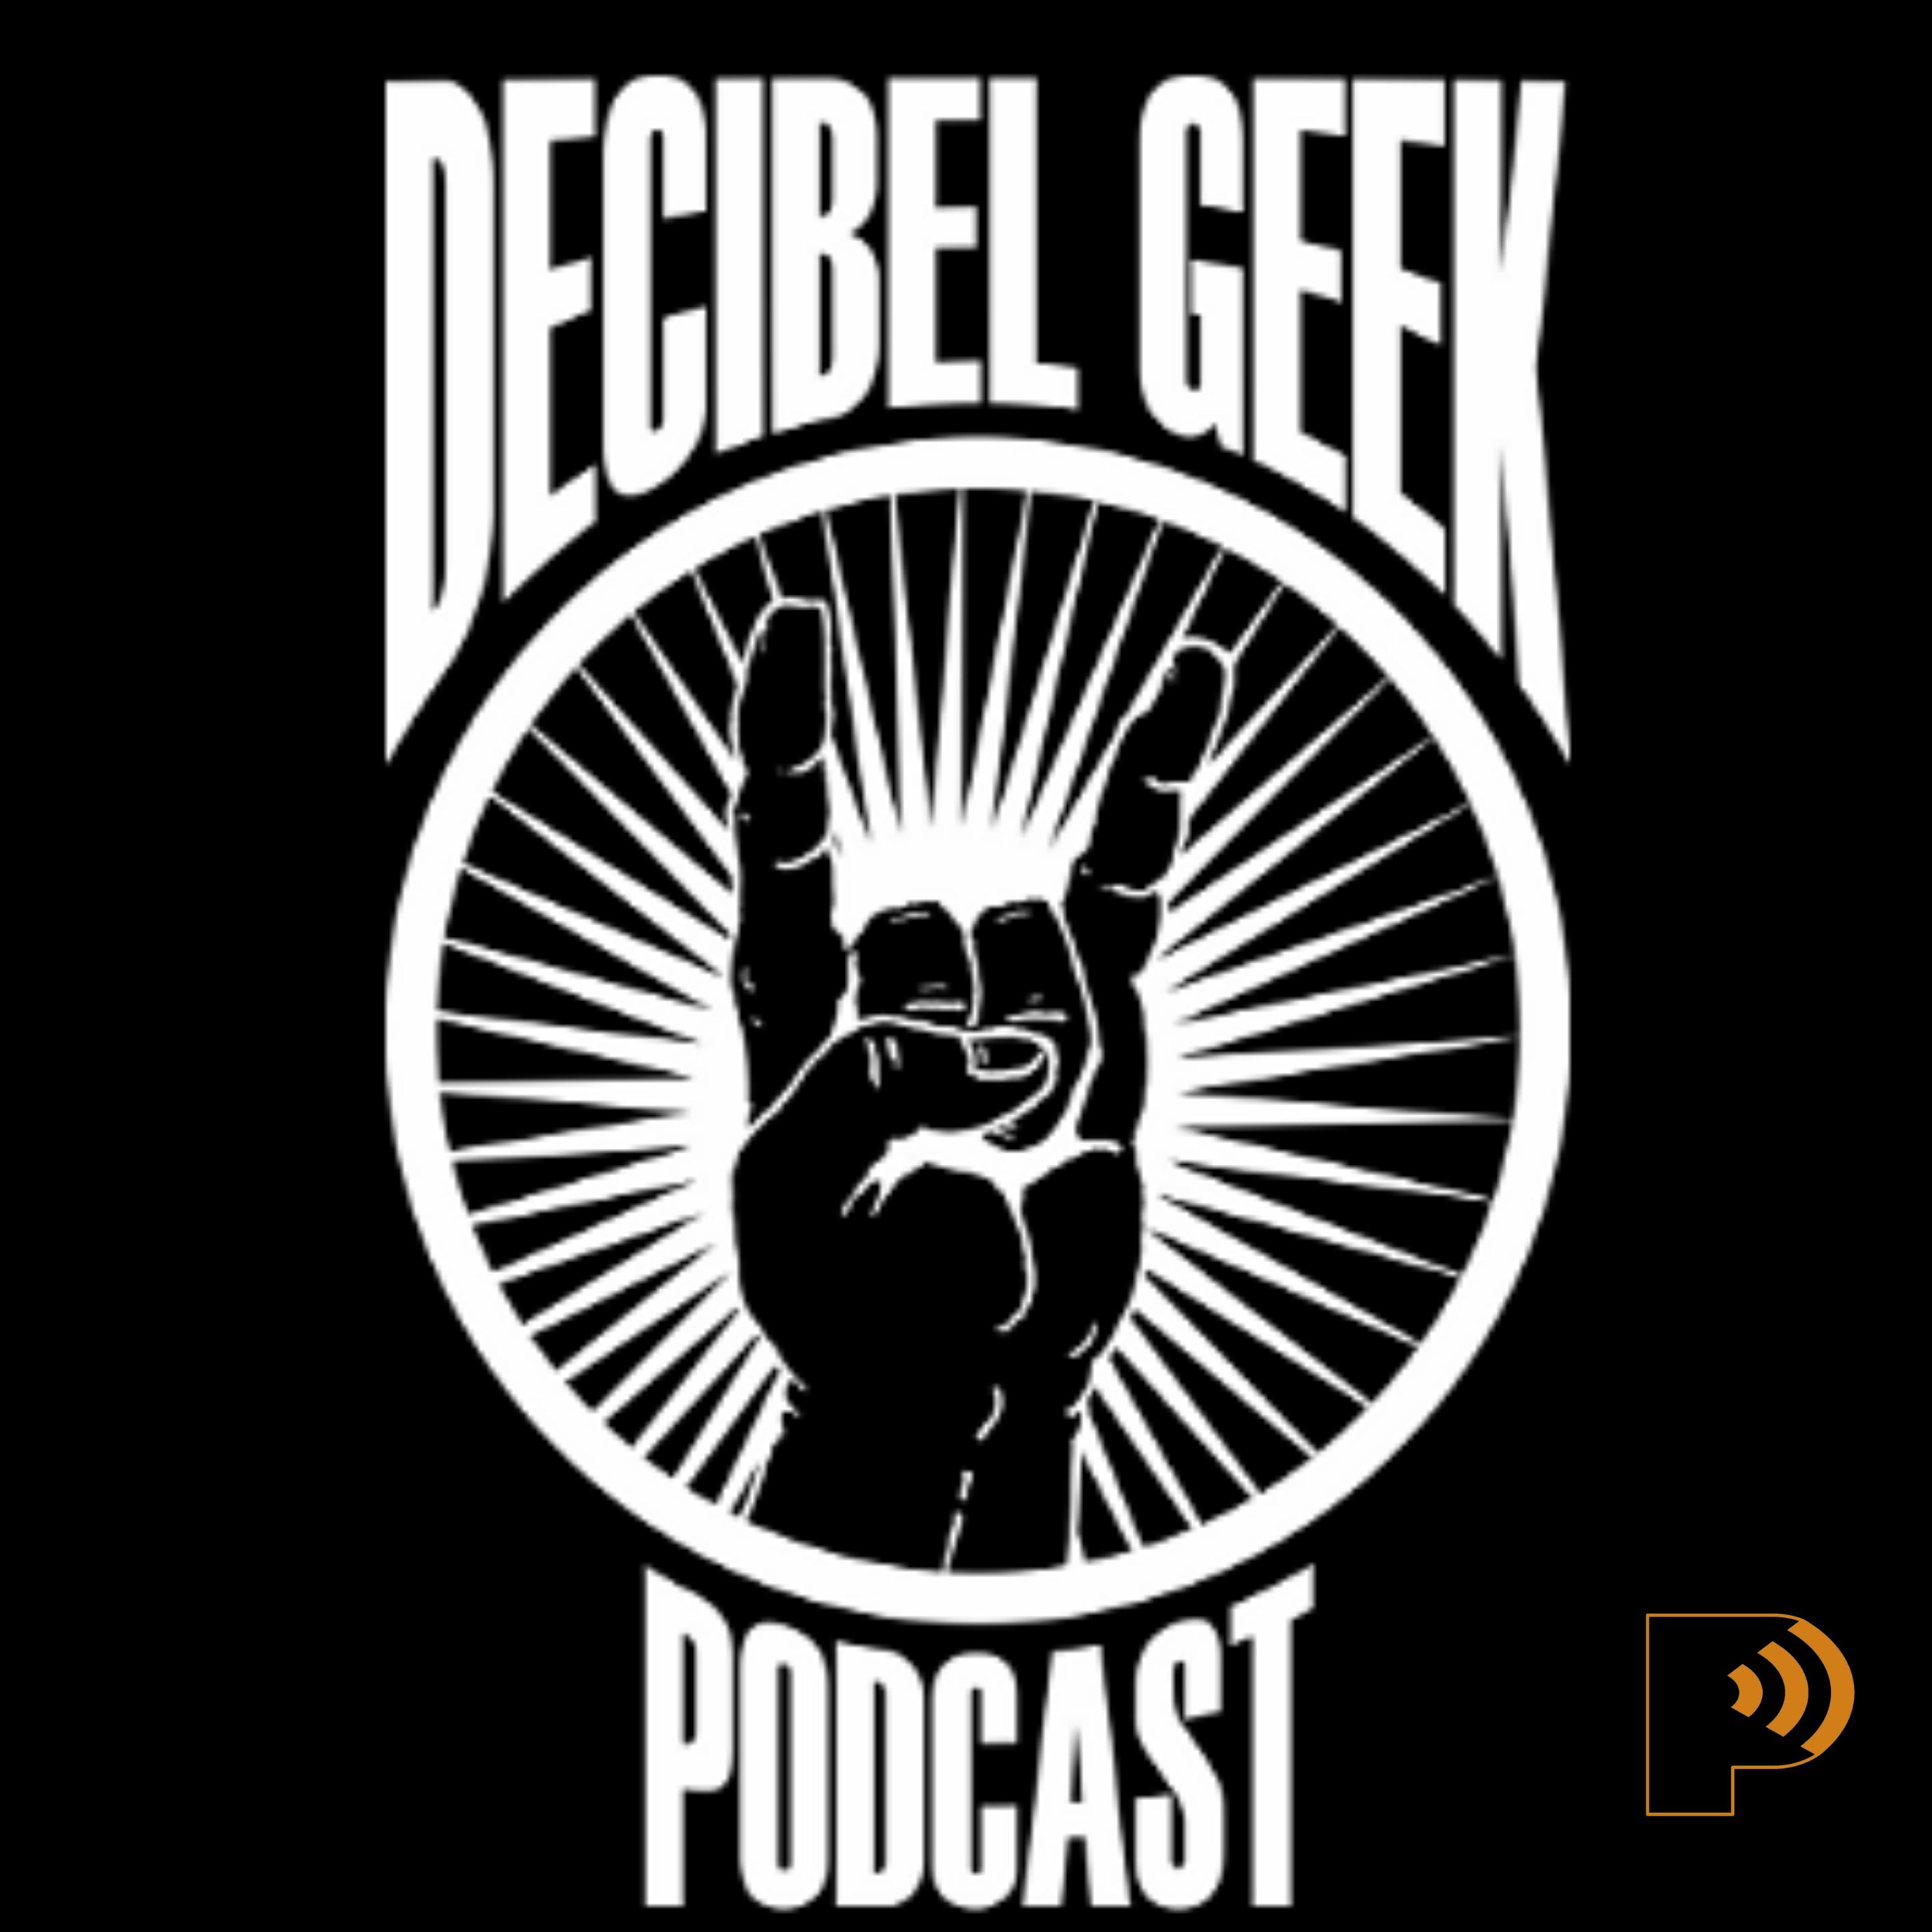 Decibel Geek Podcast - The Best & Worst of Warrant - Ep563